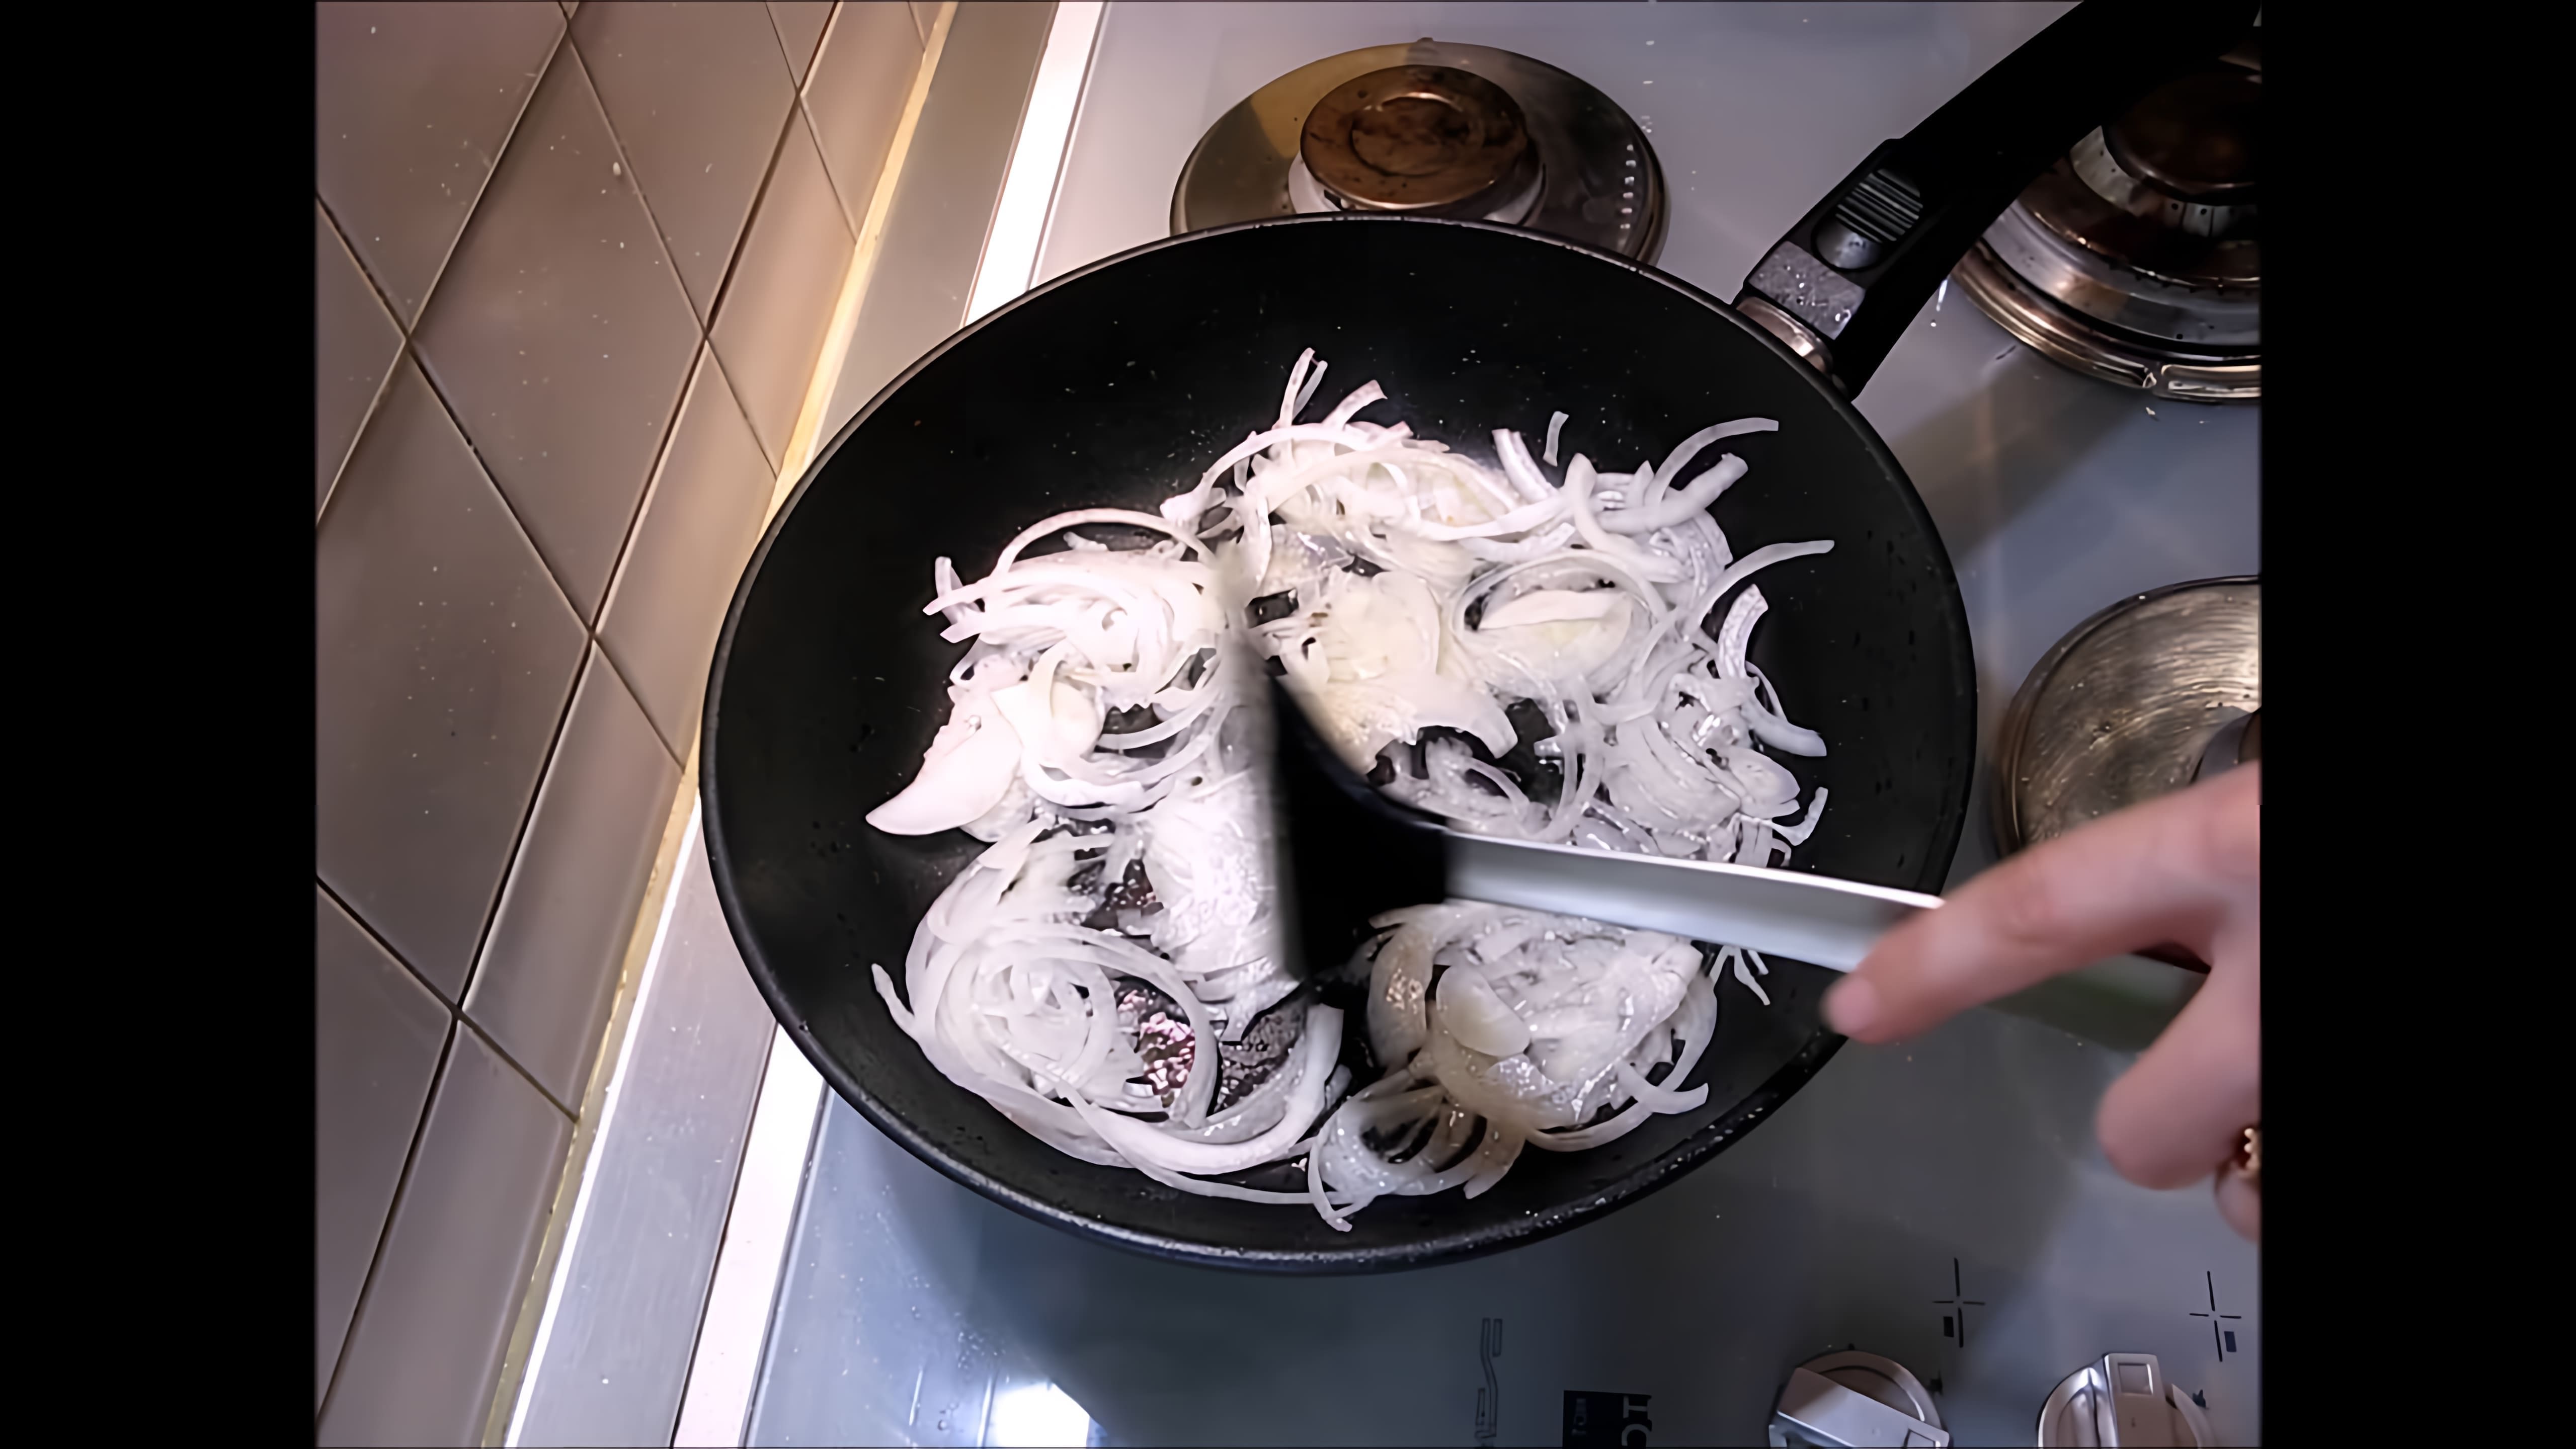 Видео-ролик с заголовком "Лапша вок в сливочном соусе